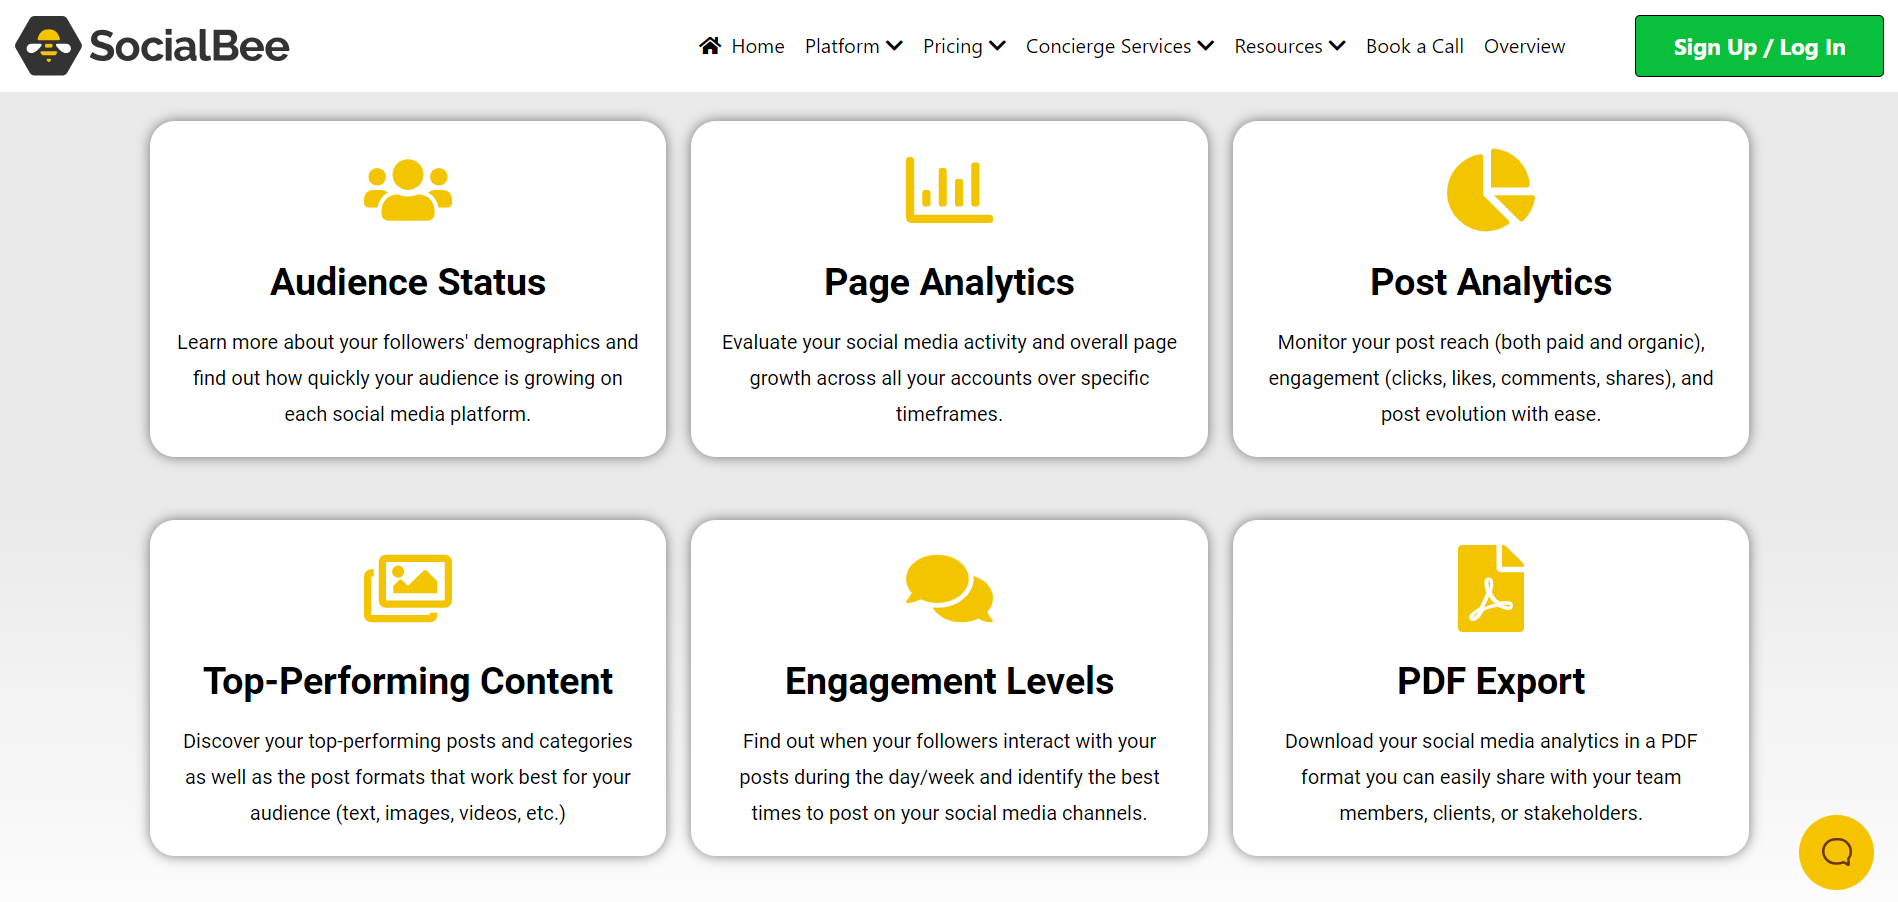 SocialBee's Analytics features